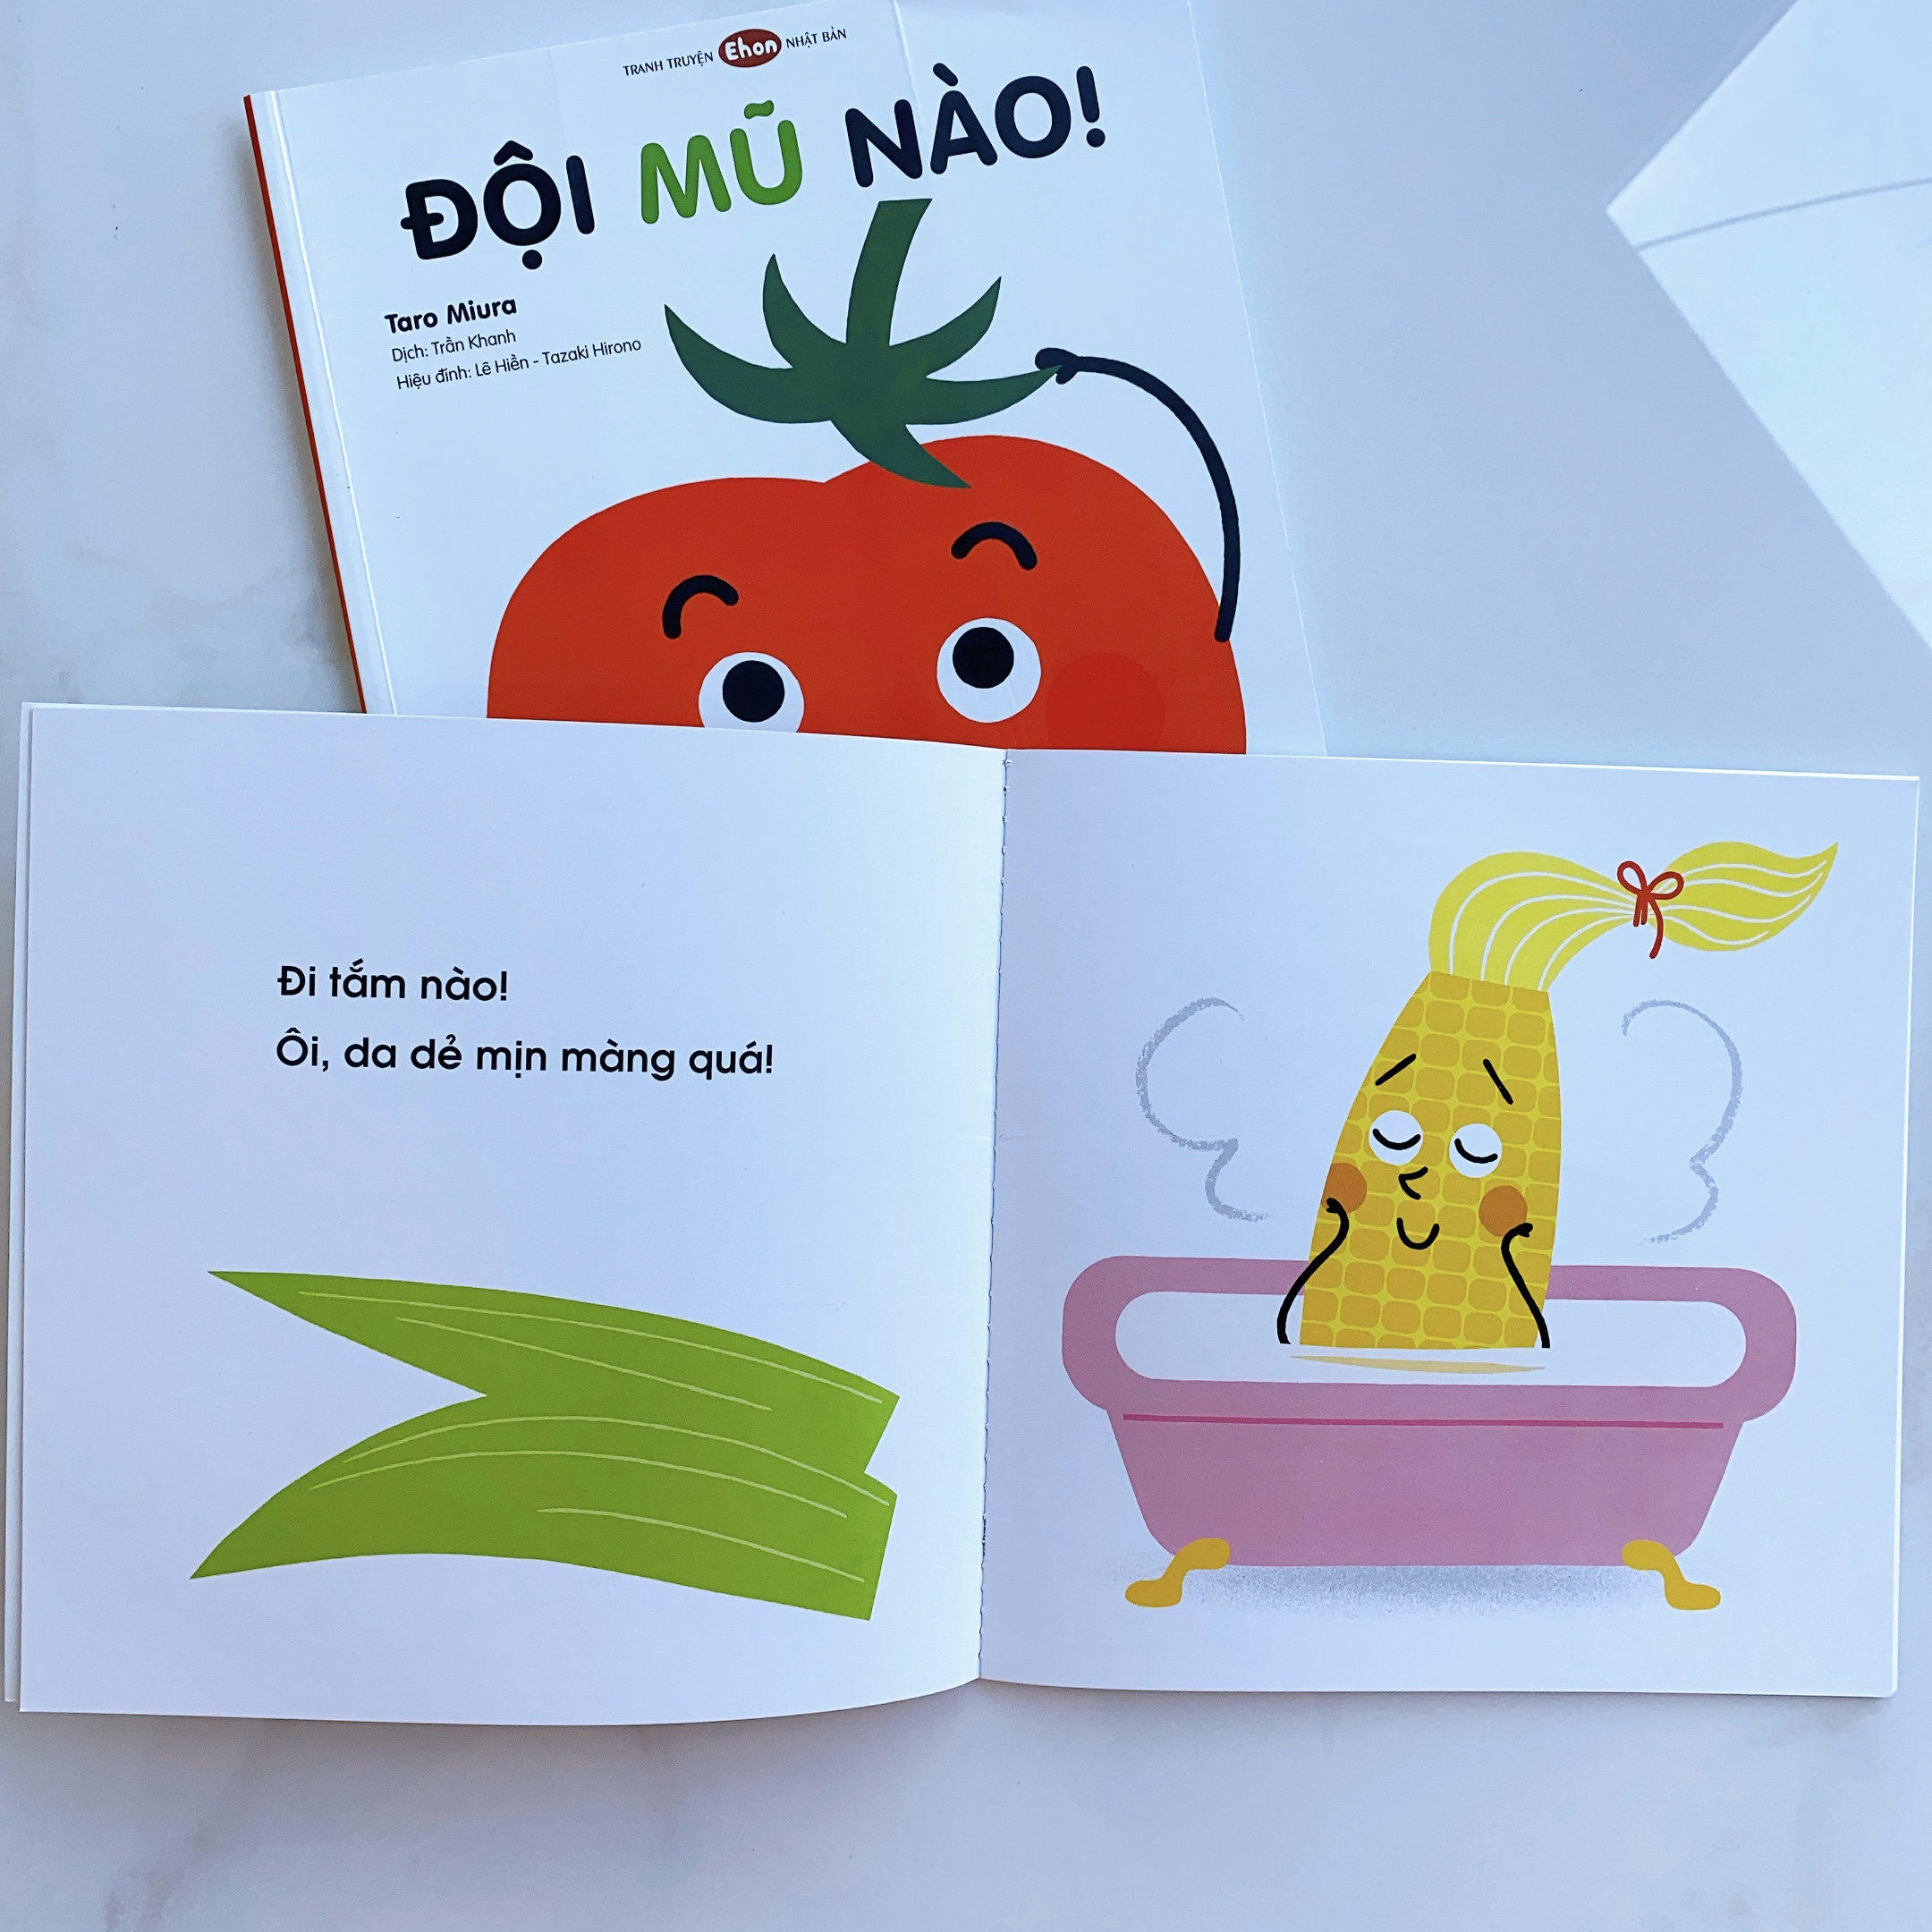 Ehon - Làm quen với sách cho bé 0-2 tuổi - Combo "Cùng làm nào" Bao gồm "Đi tắm nào" và "Đội mũ nào"